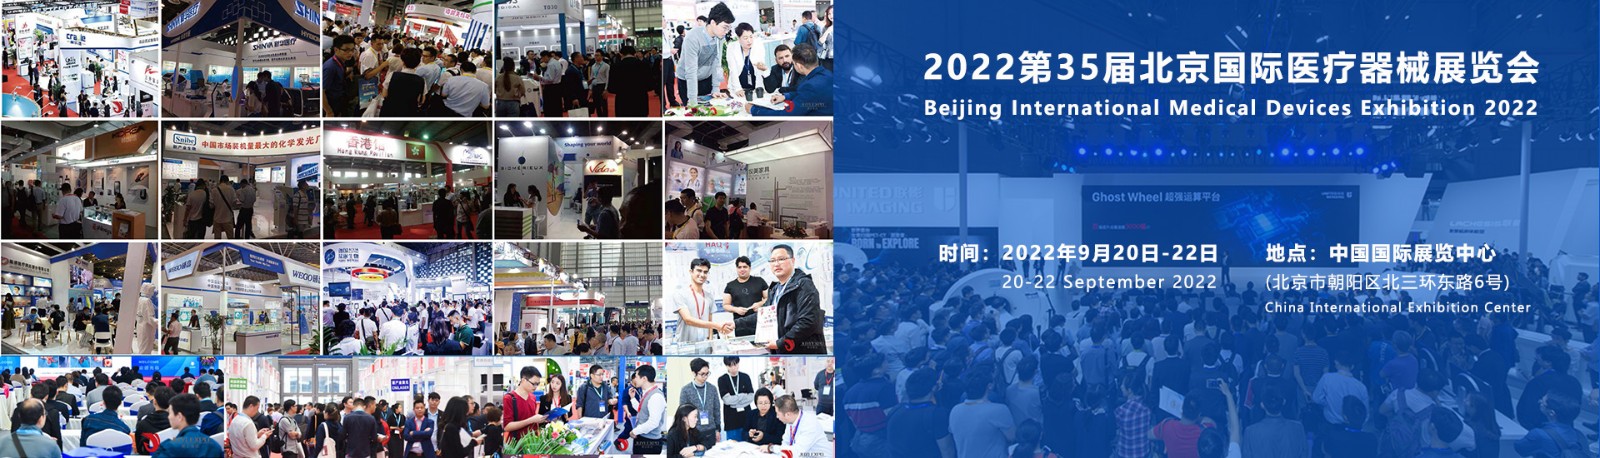 国际医疗器械展览会 2022北京医疗器械展